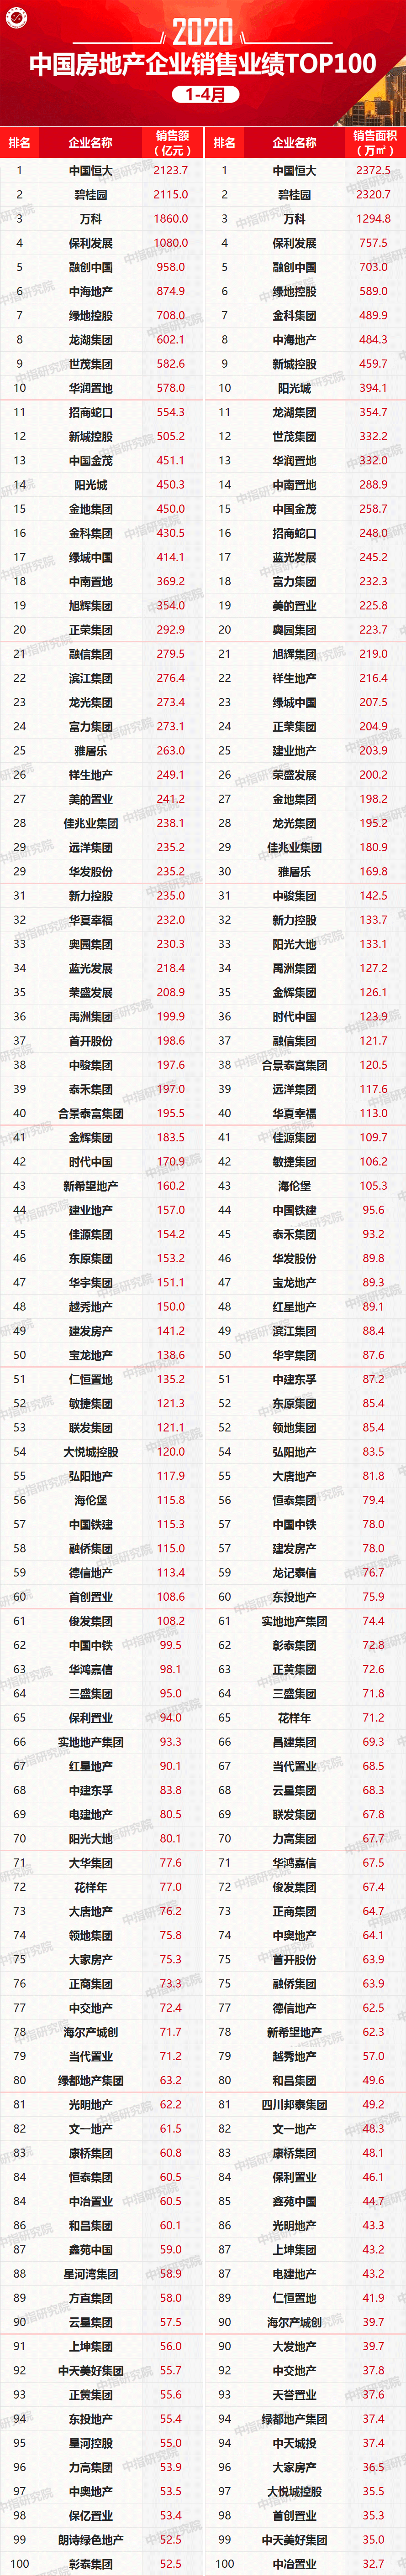 2020年1-4月中国房地产企业销售业绩100